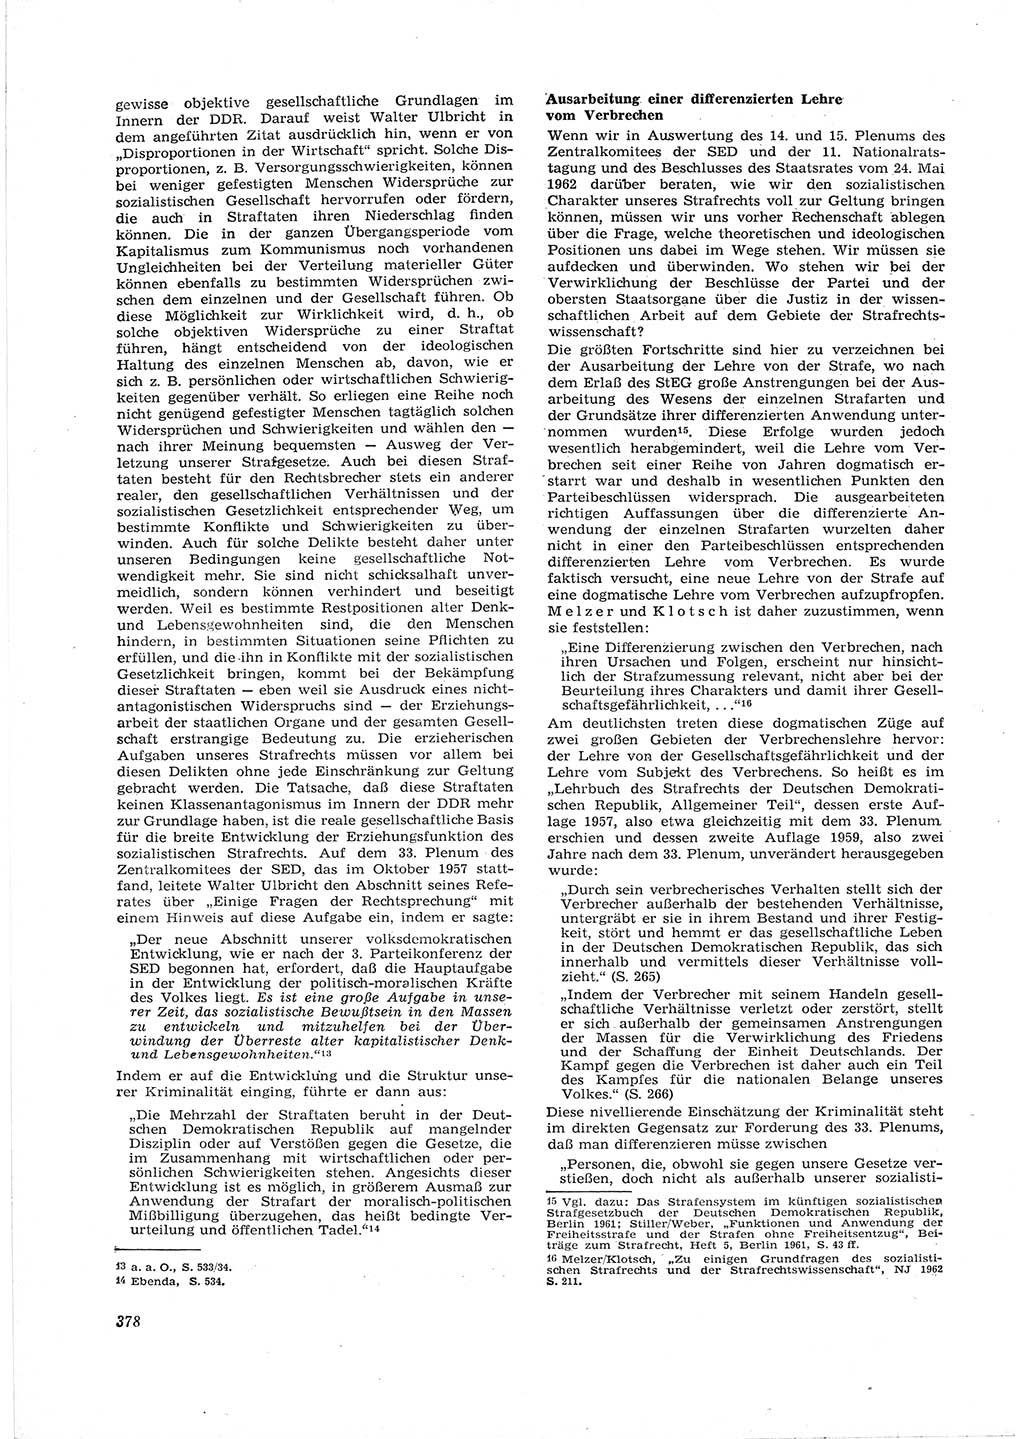 Neue Justiz (NJ), Zeitschrift für Recht und Rechtswissenschaft [Deutsche Demokratische Republik (DDR)], 16. Jahrgang 1962, Seite 378 (NJ DDR 1962, S. 378)